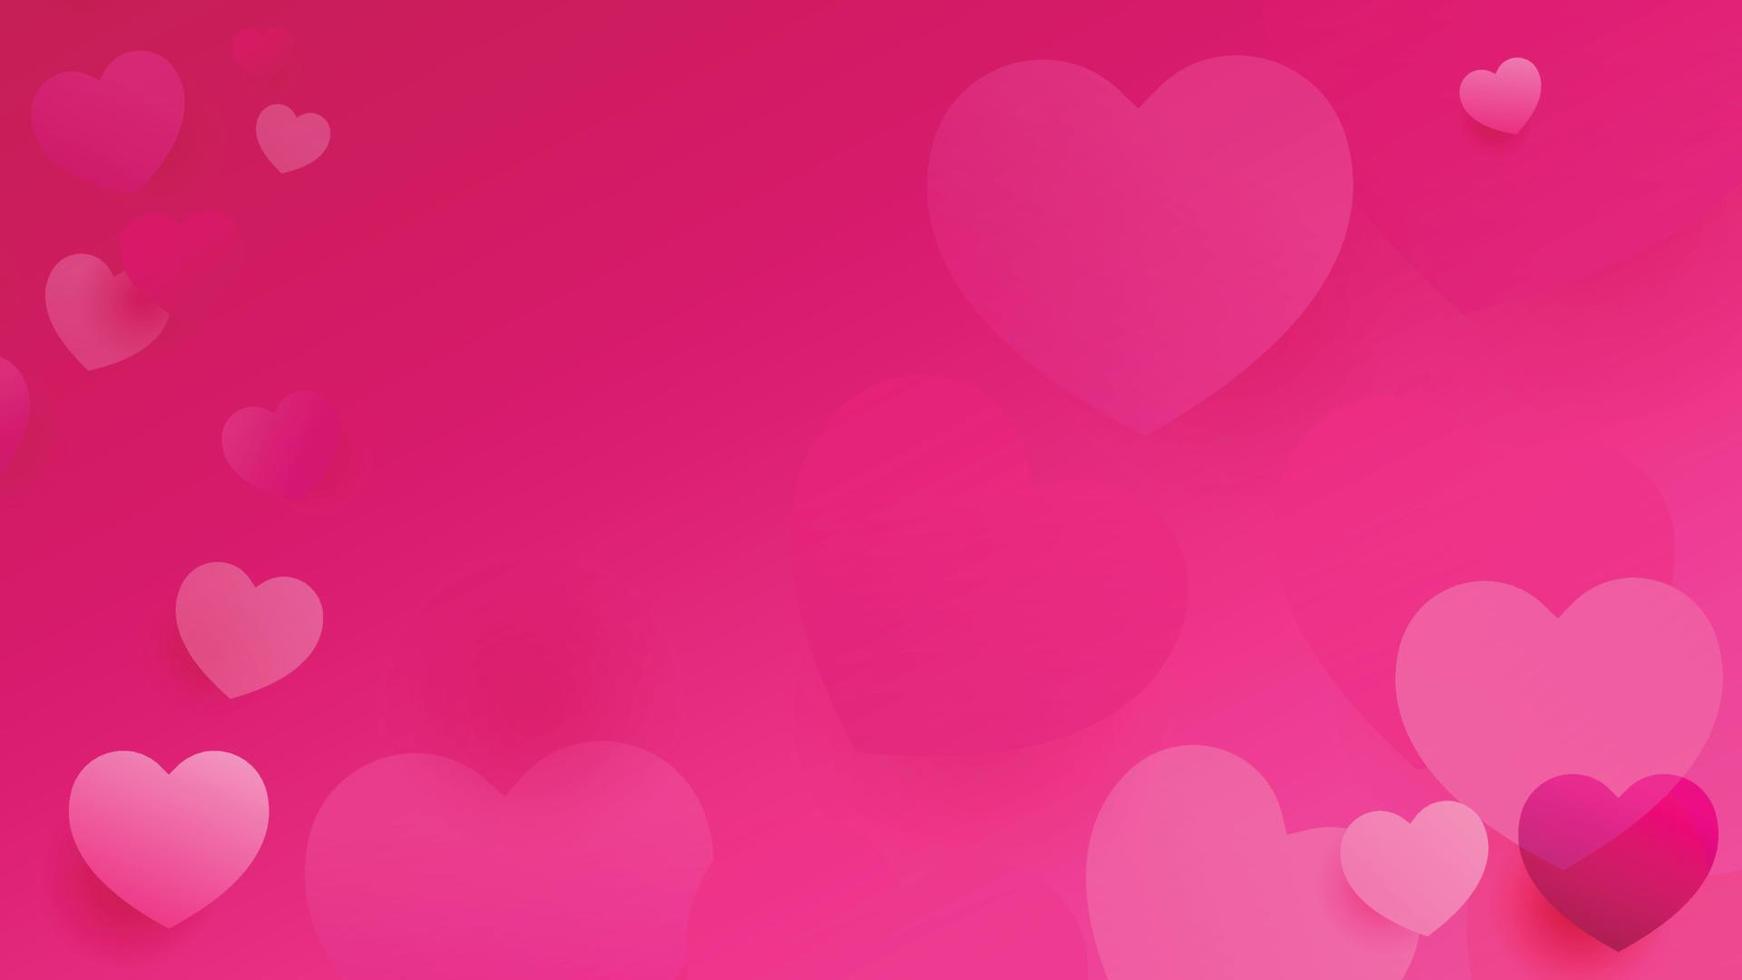 fundo de vetor de amor de coração. quadro dos namorados. fundo de corações rosa. amo ilustração de design de fundo. fundo dos namorados. coração de amor. fundo rosa abstrato.